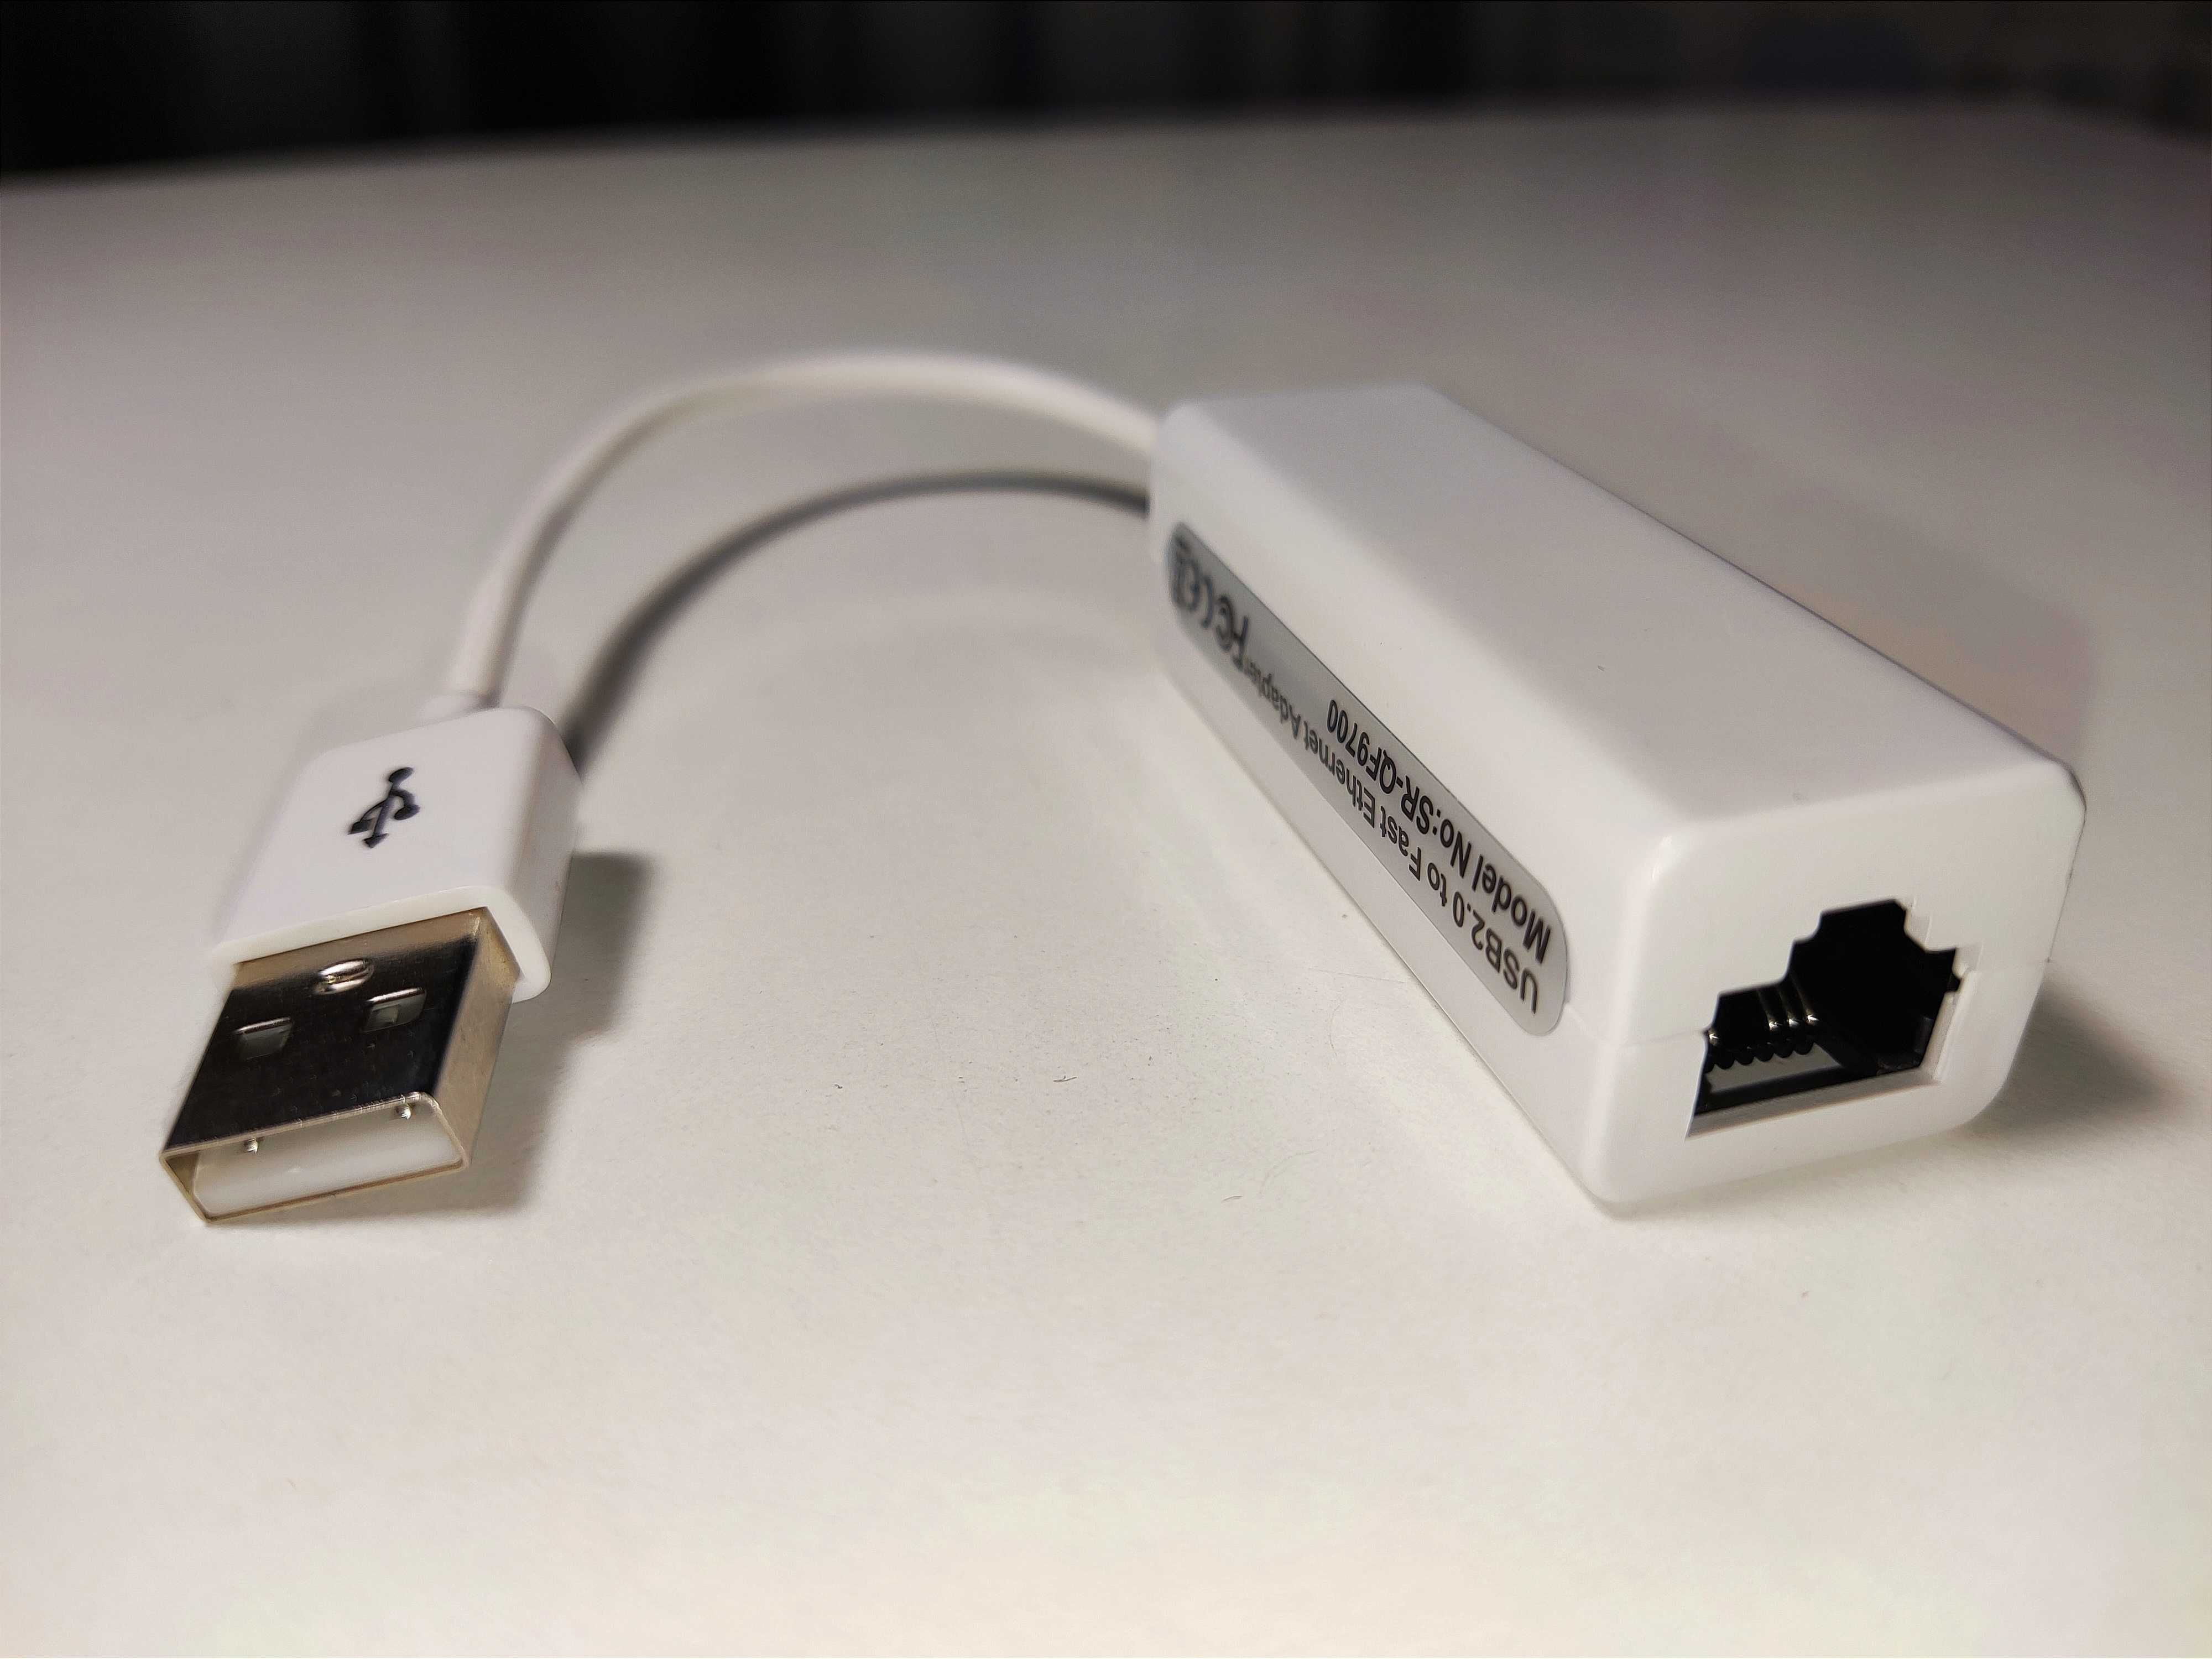 USB LAN usb3.0. 1000мб и 100мб внешняя сетевая карта